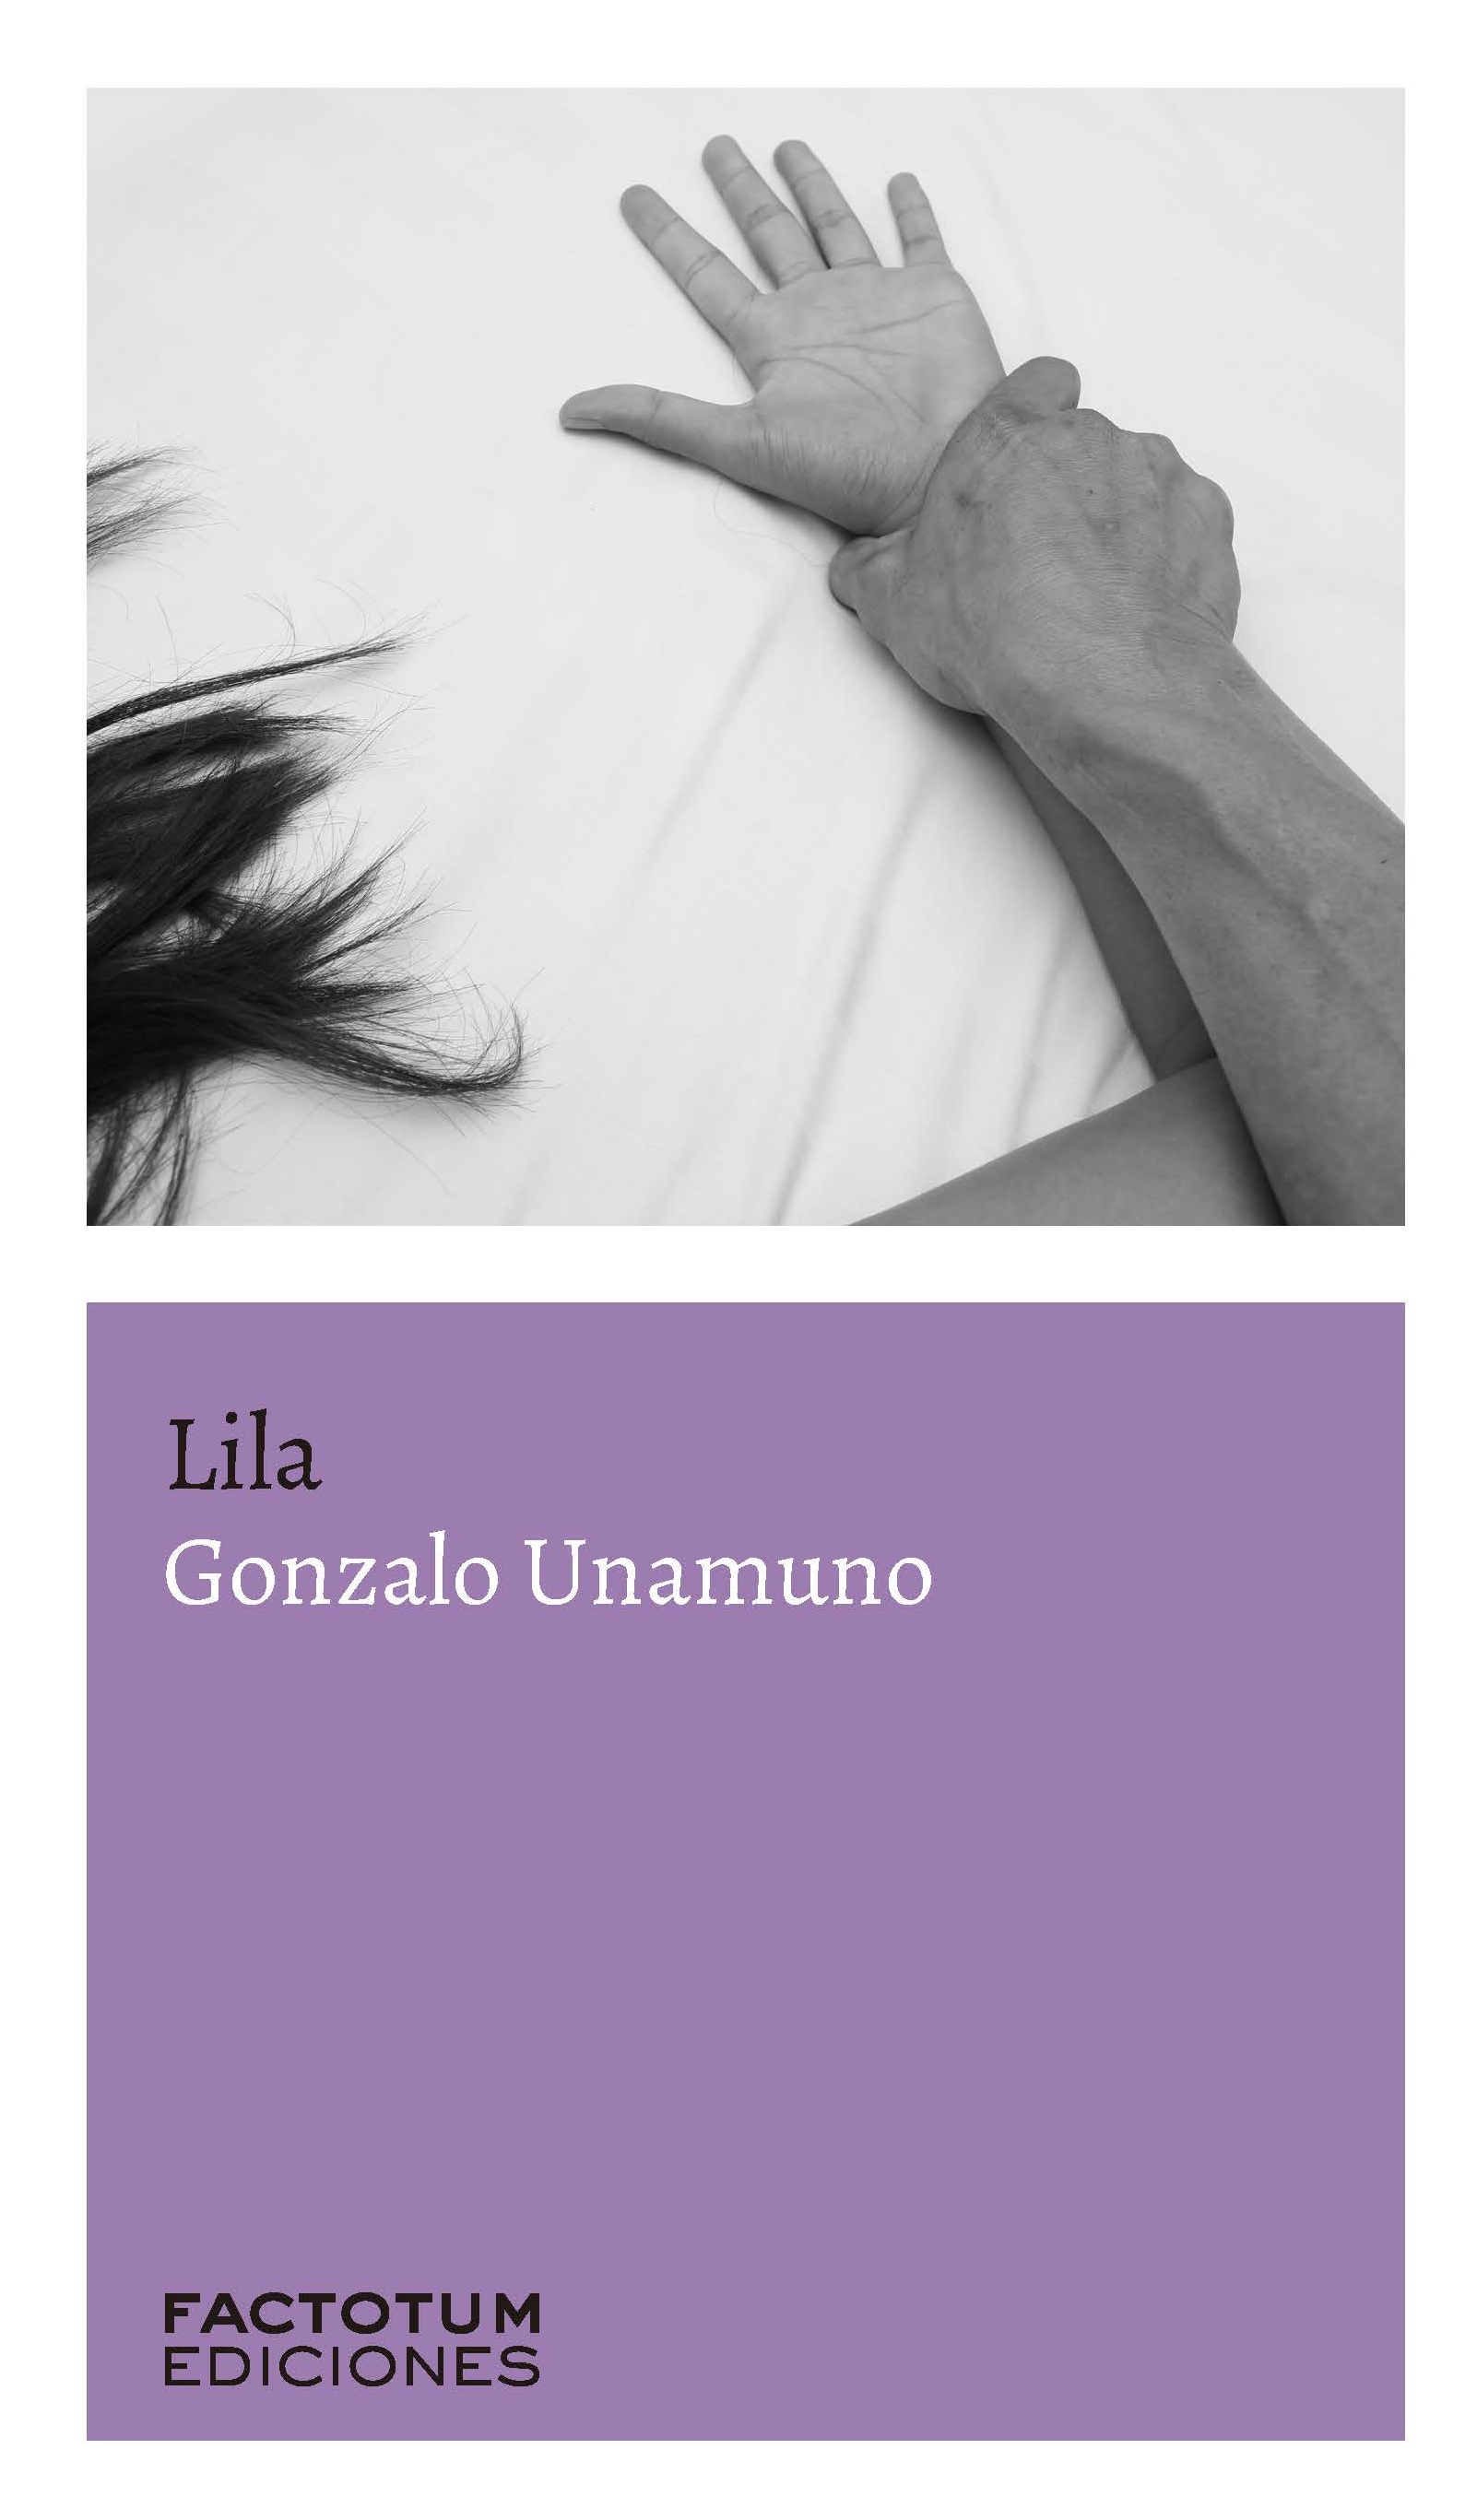 Lila de Gonzalo Unamuno - Factotum Ediciones